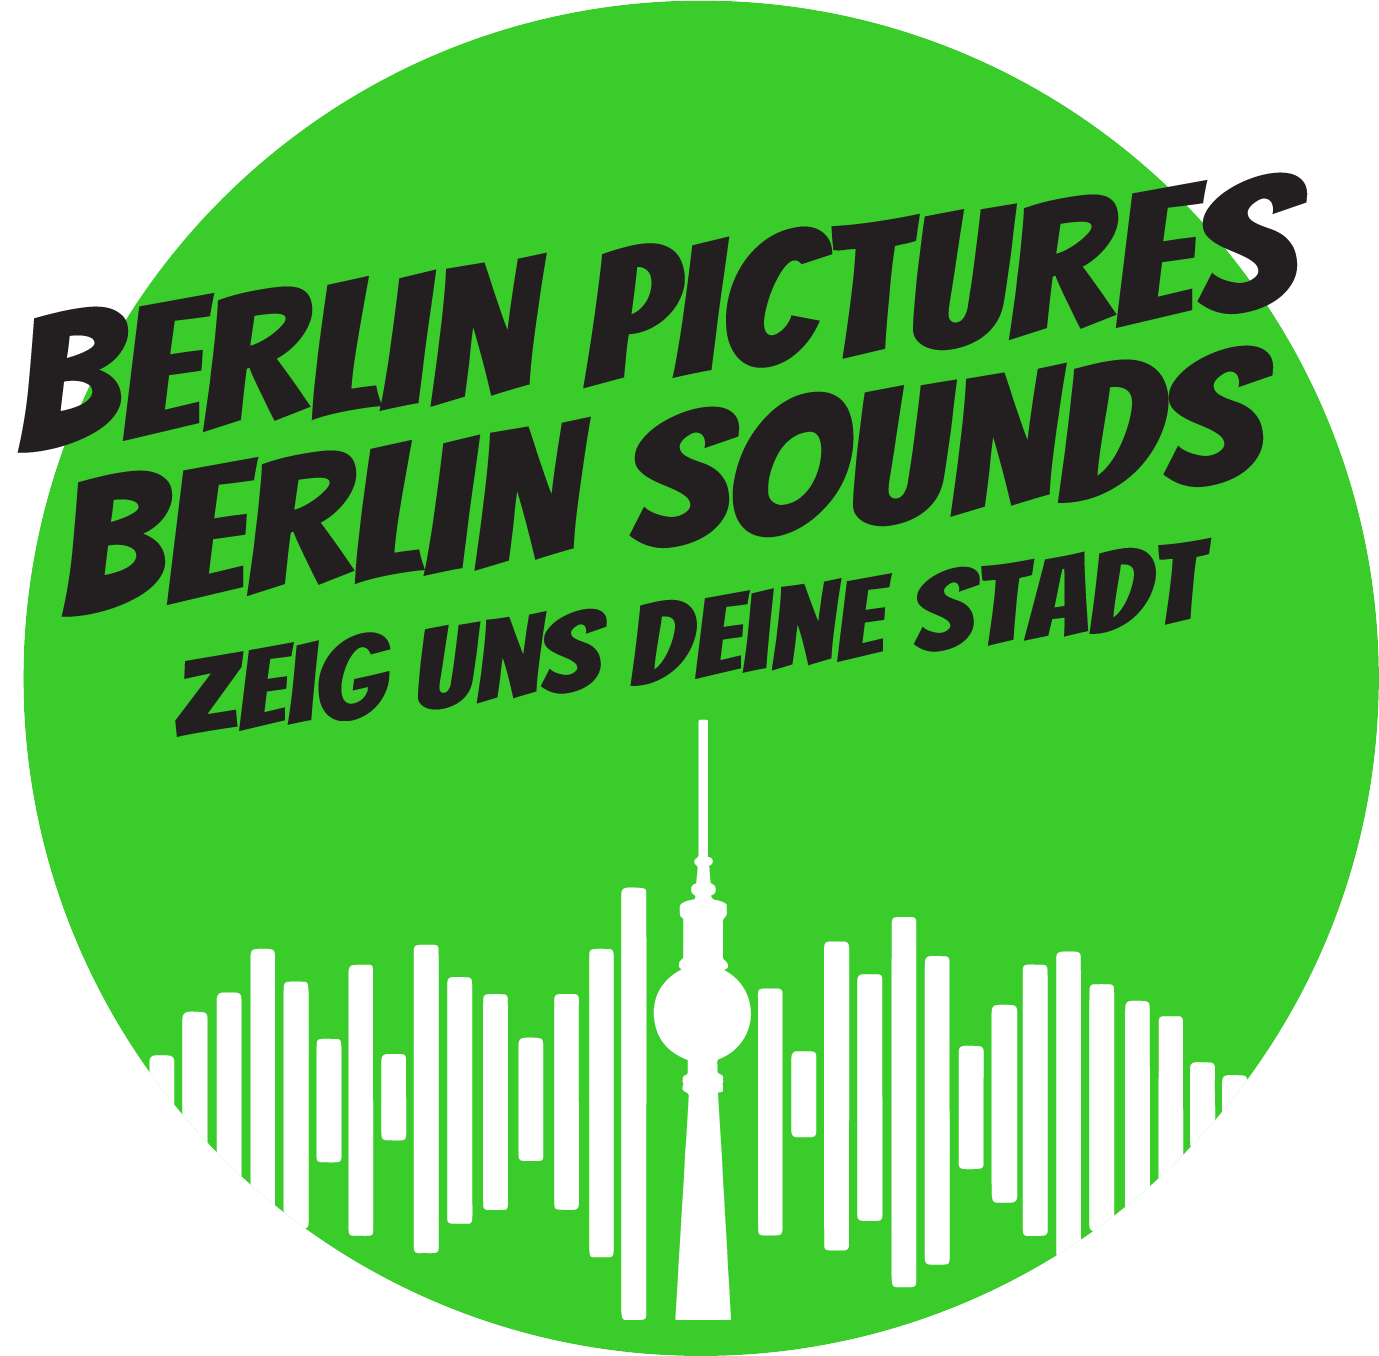 Berlin Pictures - Berlin Sounds